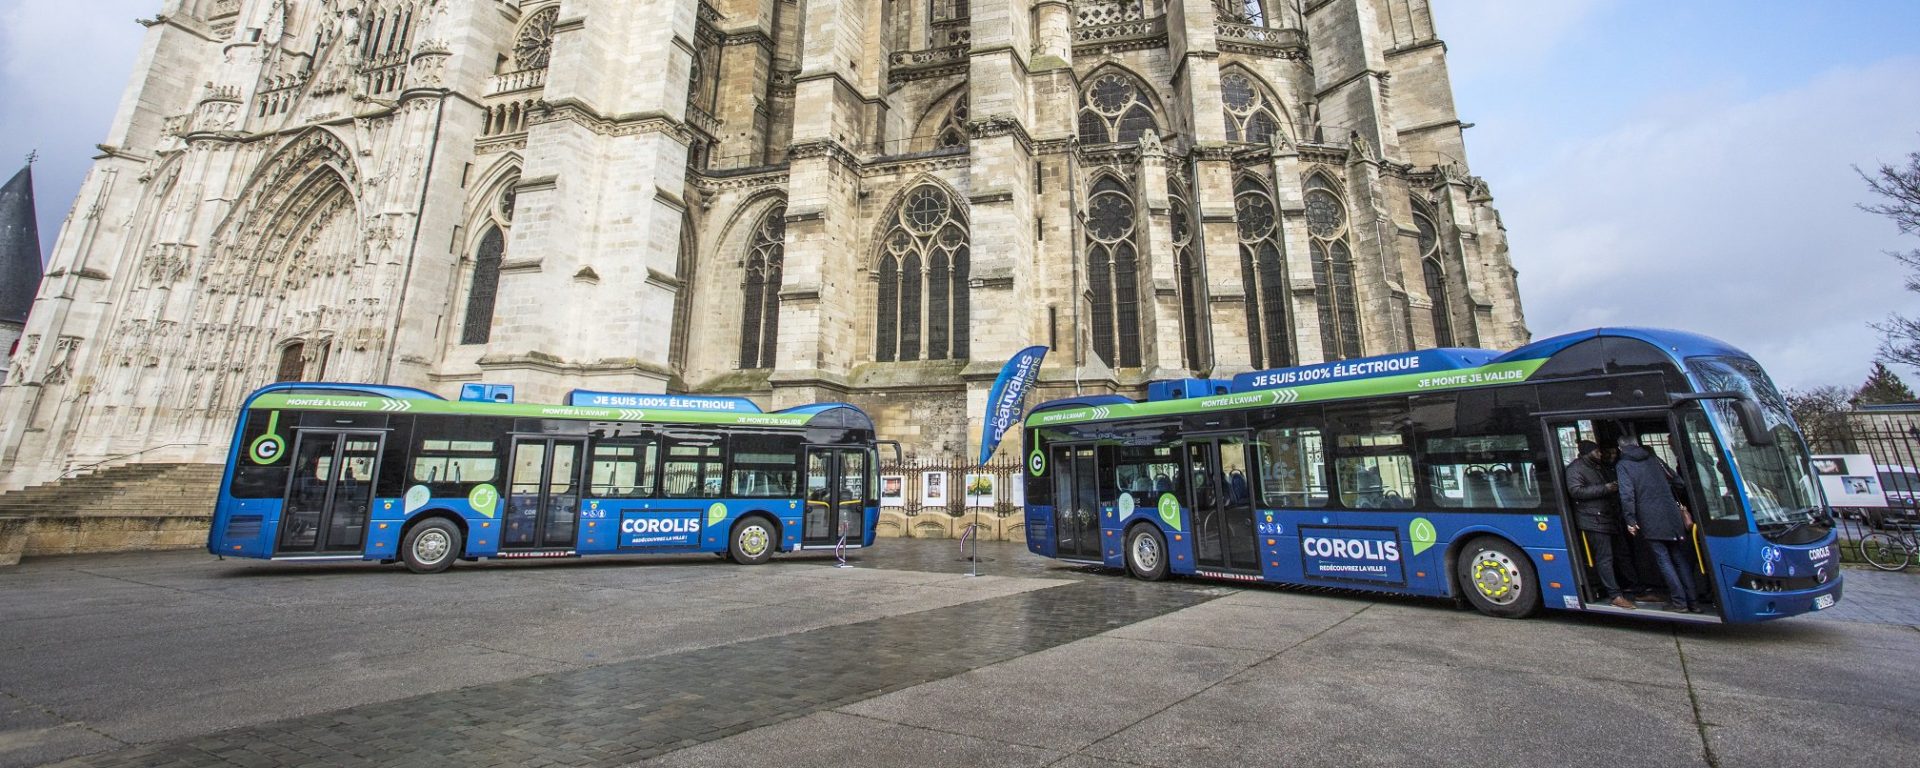 Bus_transport-urbain_Beauvais_Corolis_Beauvaisis-mobilités_Transdev-Haut-de-France